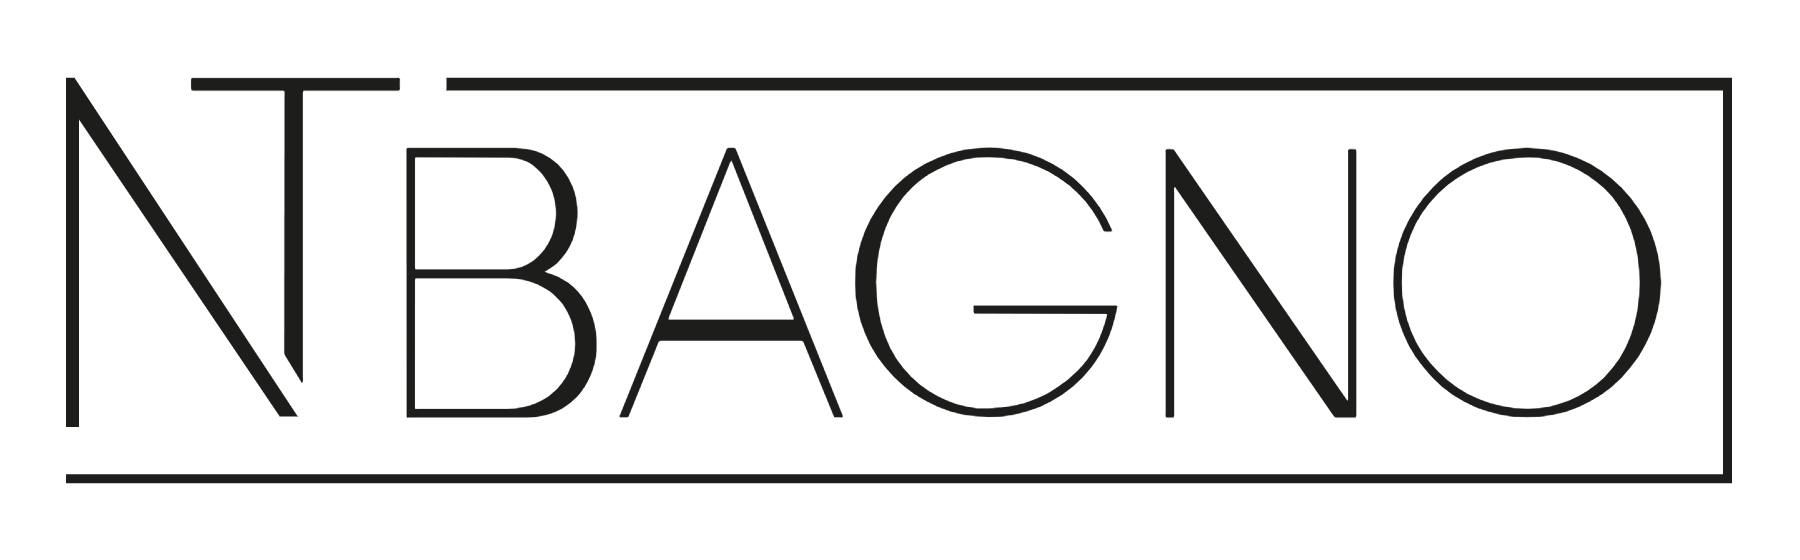 NT BAGNO logo